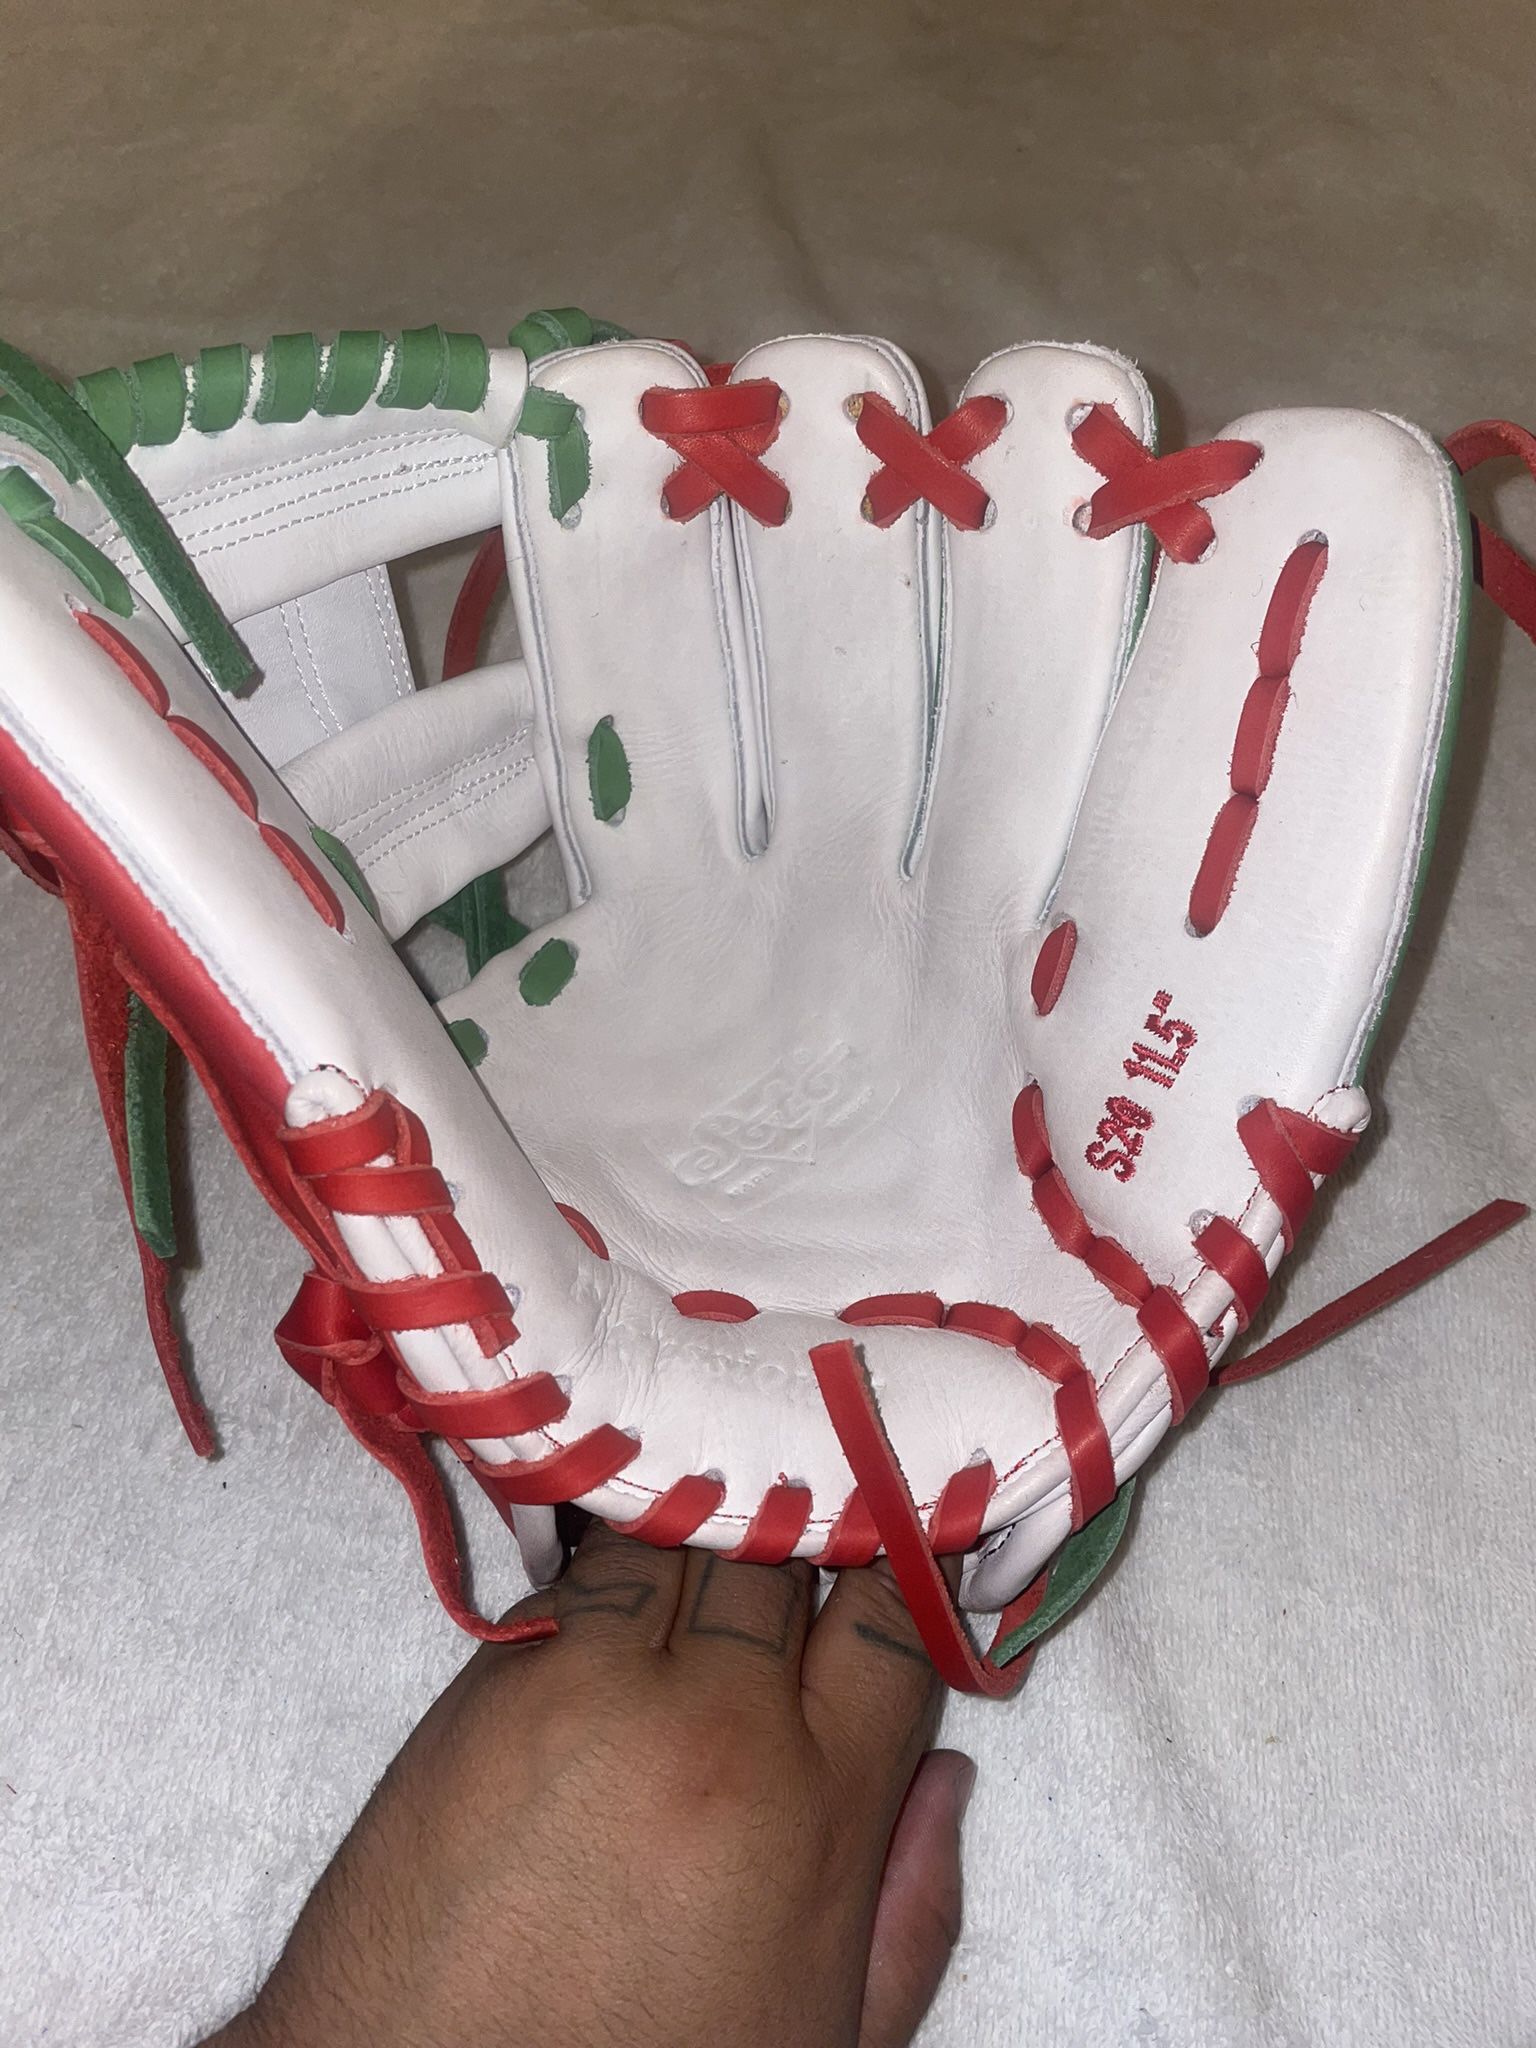 Mexico Edition Baseball Glove